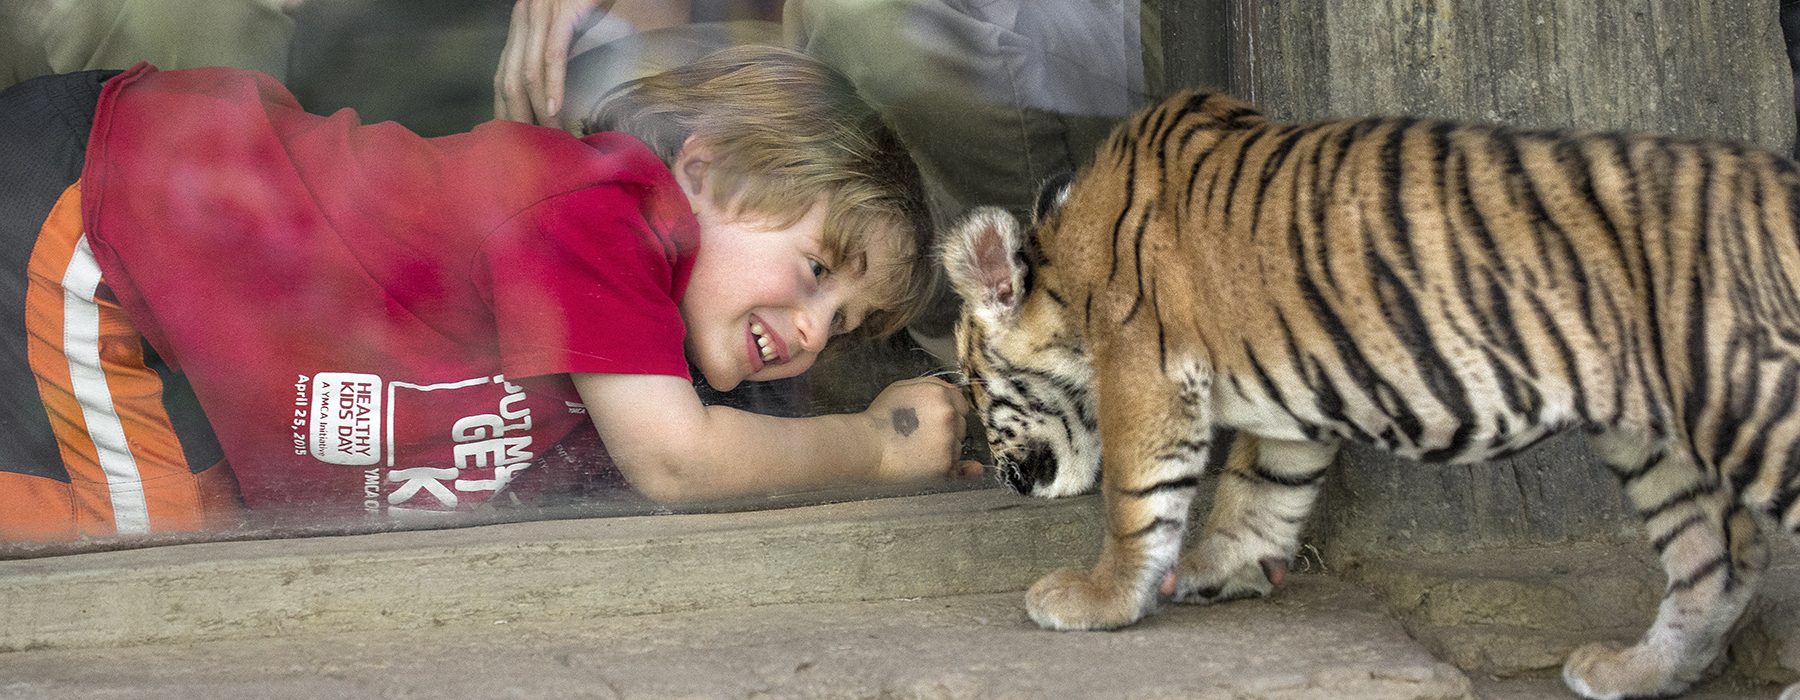 Животные и развлечения. Сафари-парк зоопарка Сан-Диего. Животные не развлечение. Сан Диего сафари парк. Малыш учит животных.